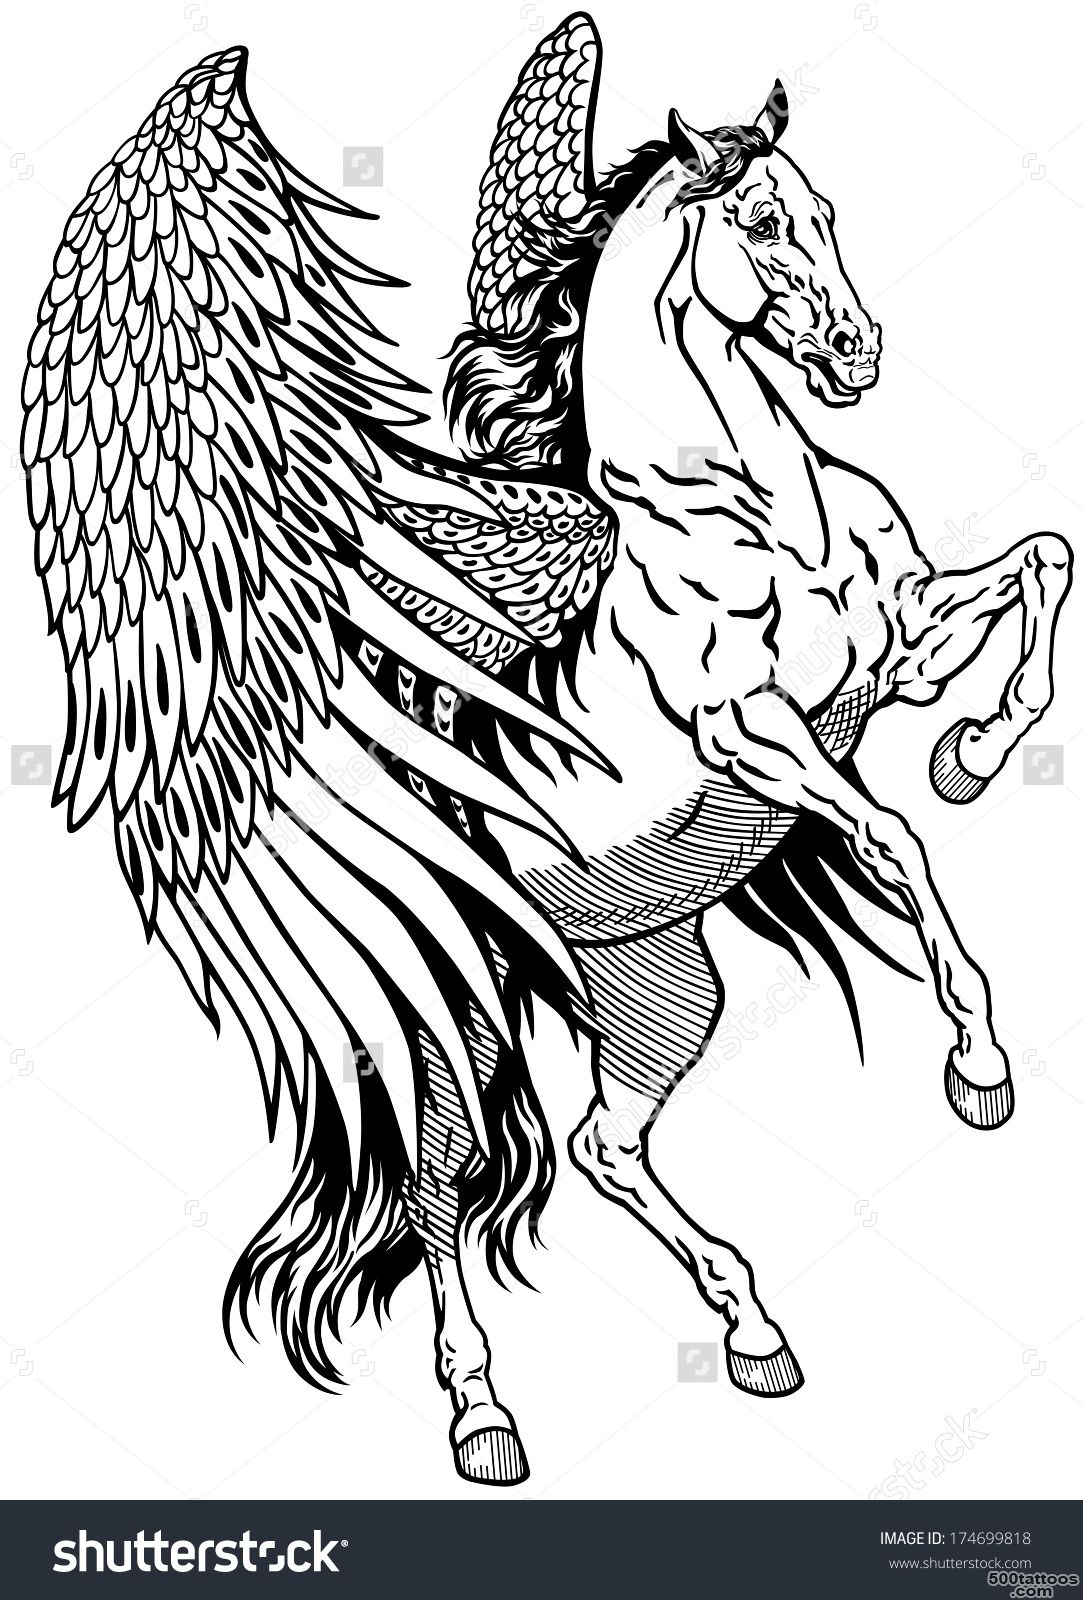 White Pegasus, Mythological Winged Horse, Black And White Tattoo ..._27